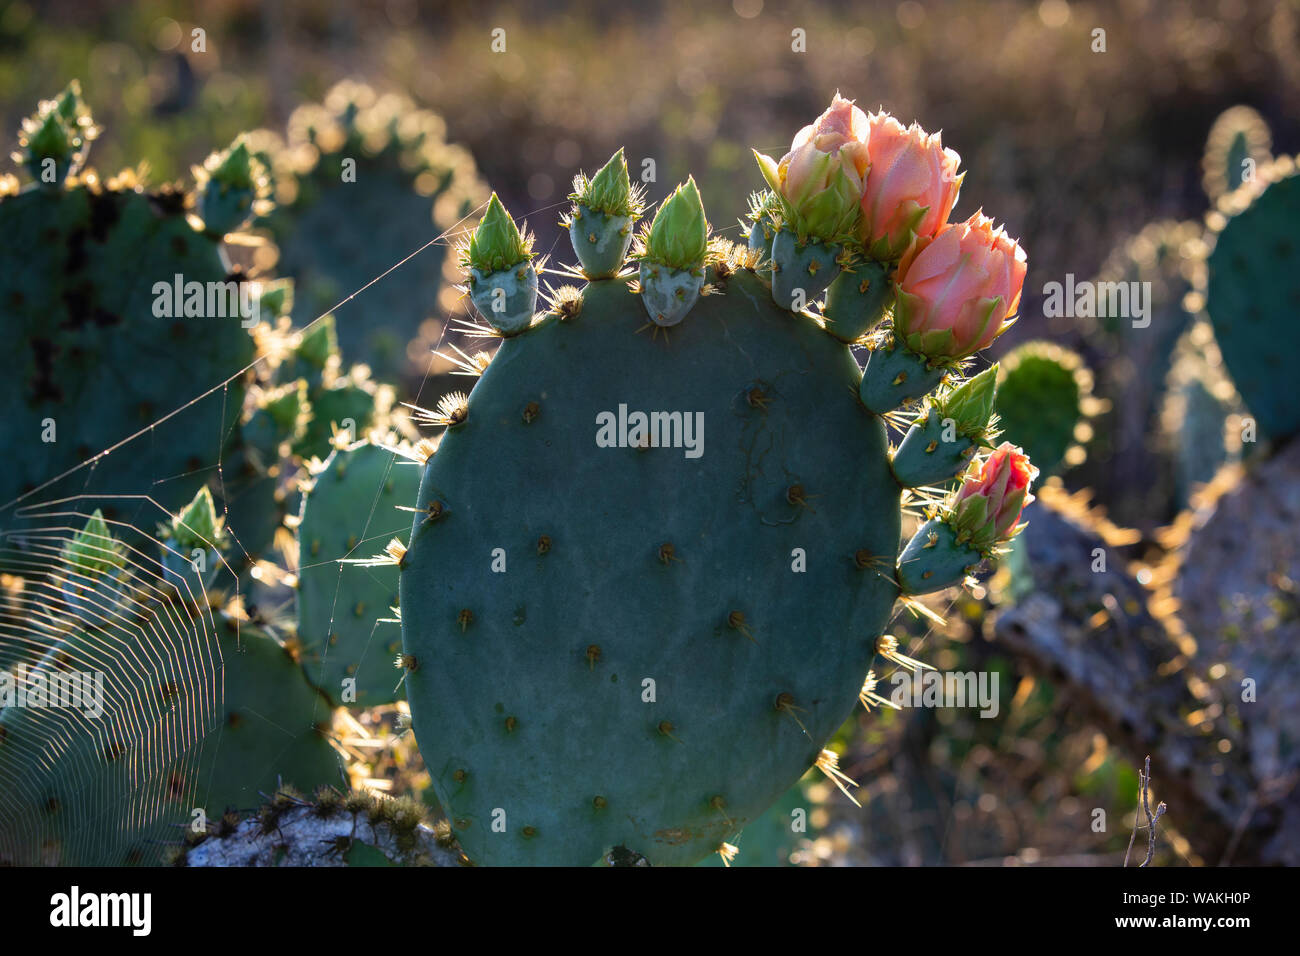 La tuna (Opuntia lindheimeri) cactus en flor. Foto de stock